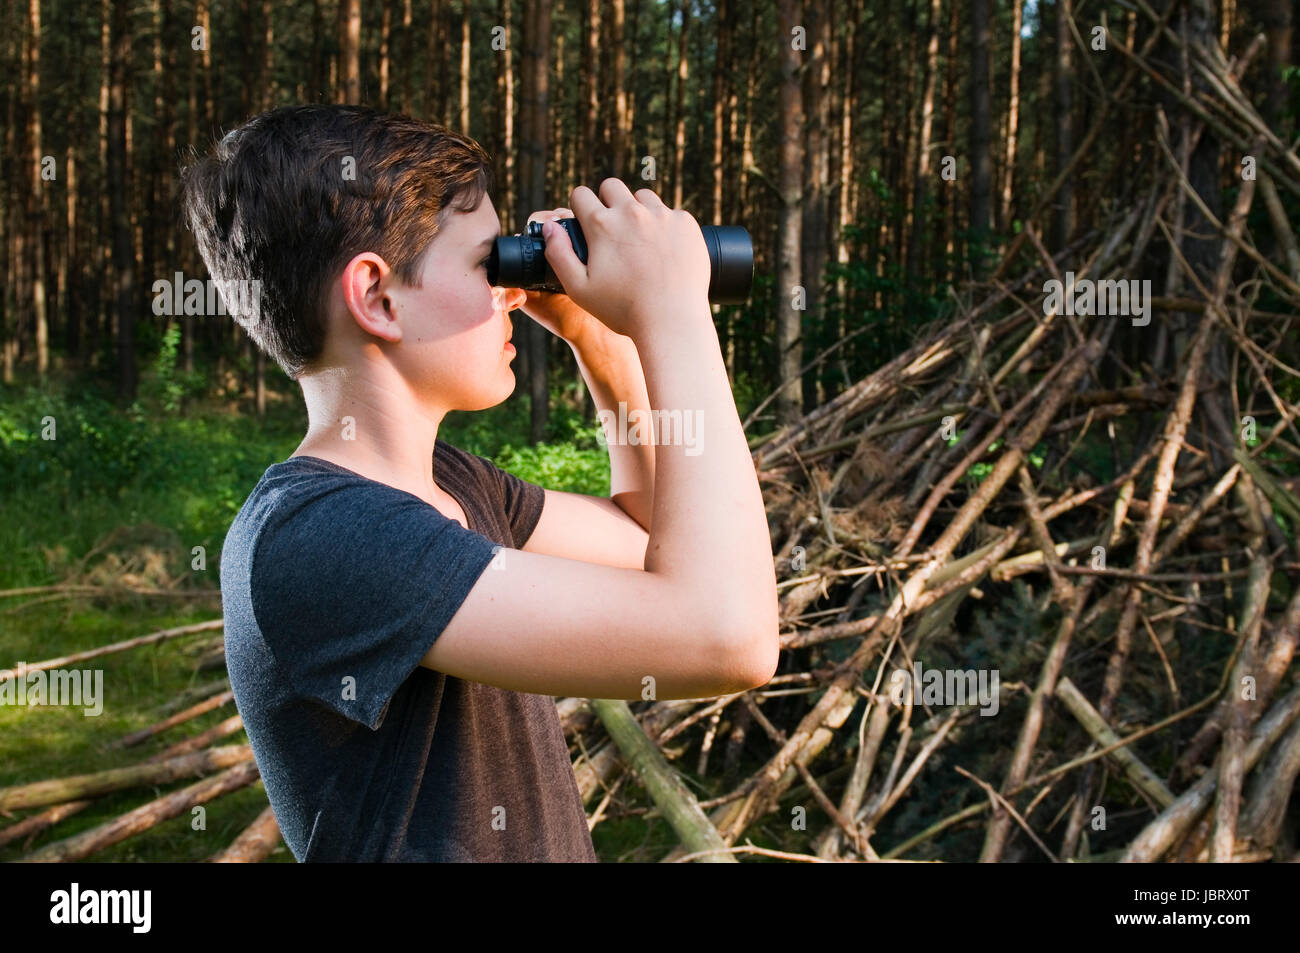 Seitliche Kopf-und-Schulter-Ansicht eines 13jährigen männlichen adolescenti im Wald durch ein Fernglas schauend Foto Stock